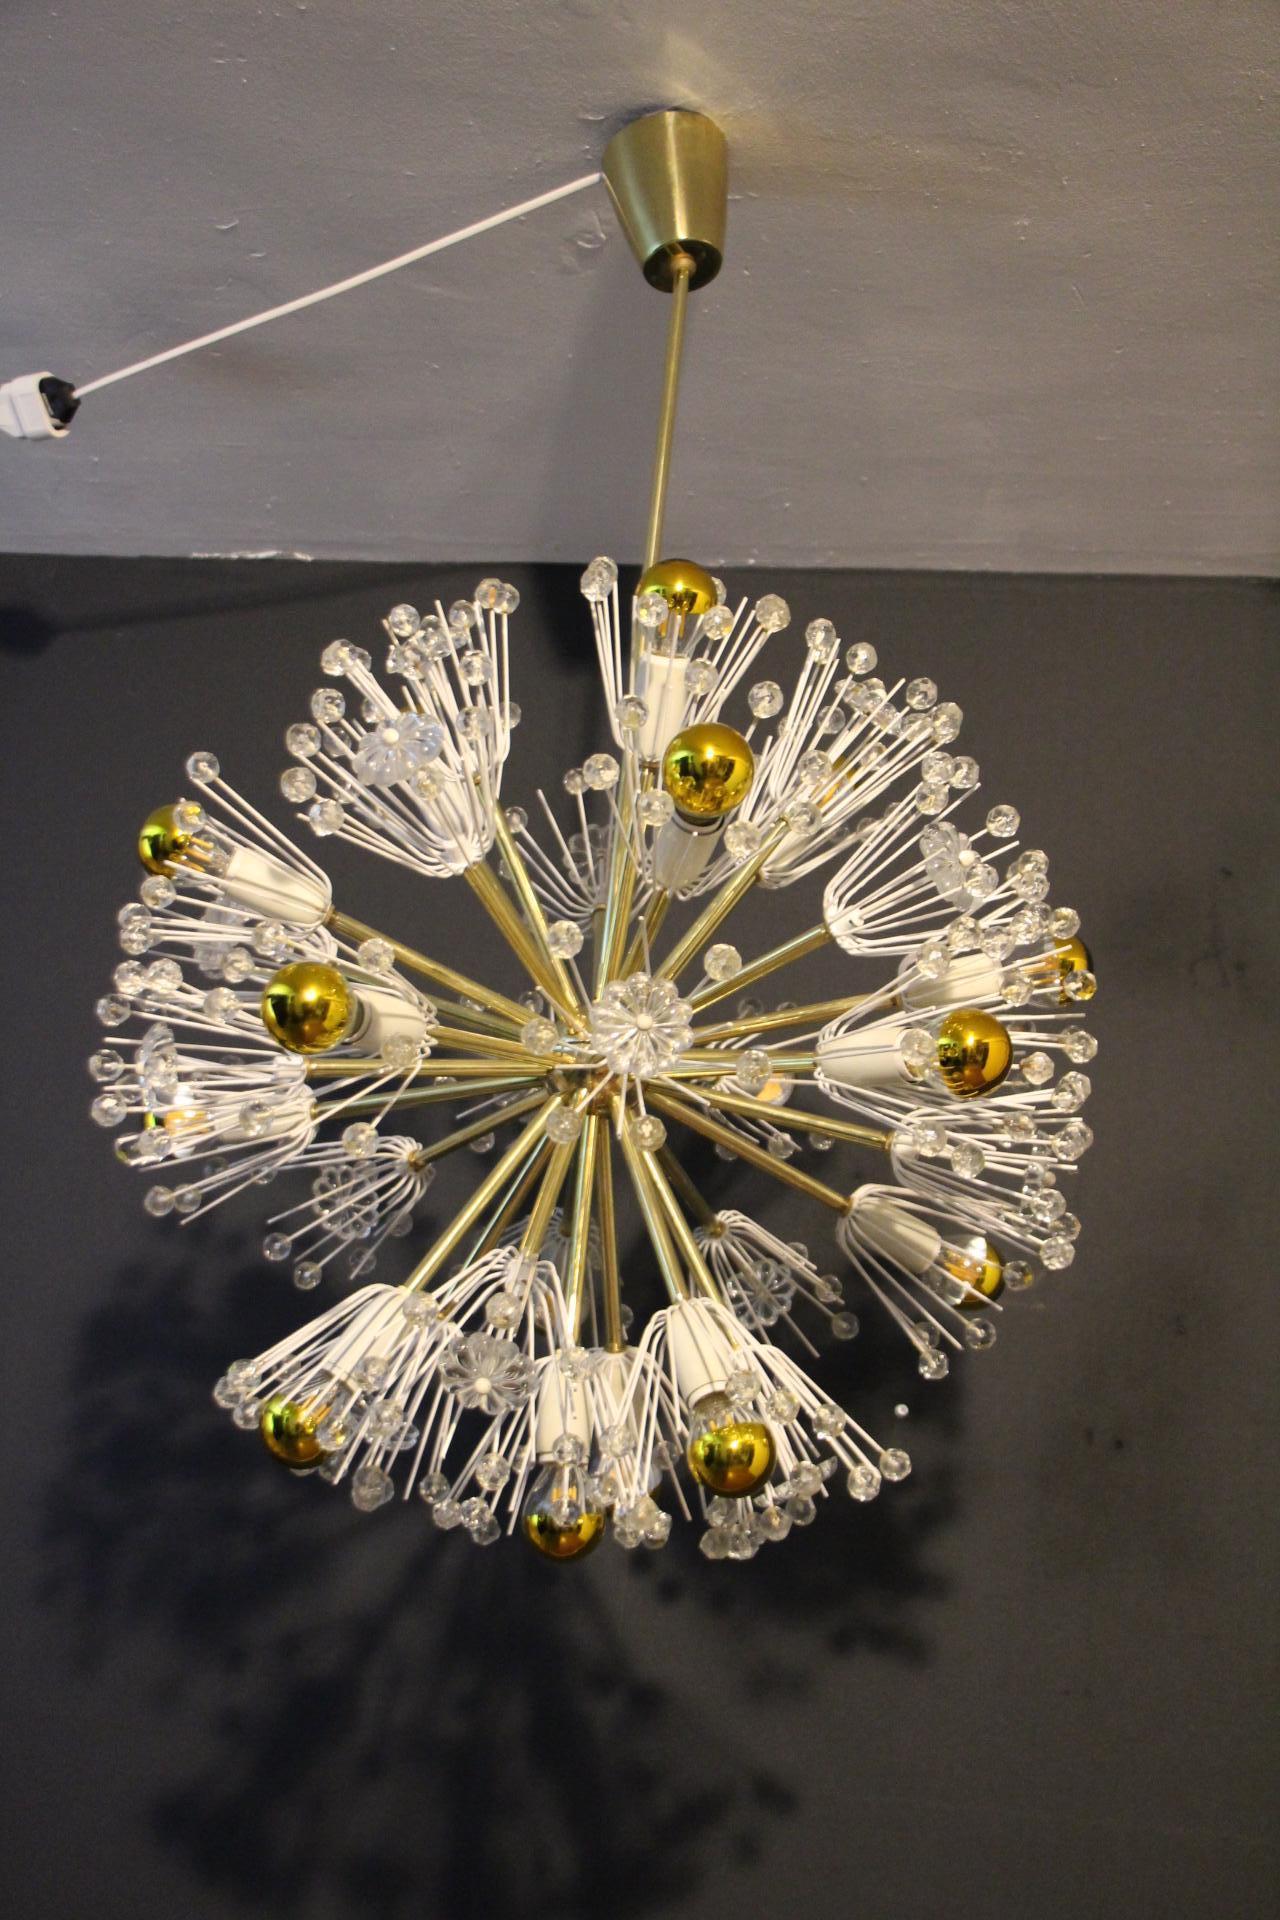 Ce spectaculaire lustre Sputnik ressemble à une explosion de fleurs et se compose d'une multitude de tiges en laiton terminées par des bulbes ou des fleurs en cristal clair. Chaque tige est directement fixée sur sa sphère centrale en laiton poli .